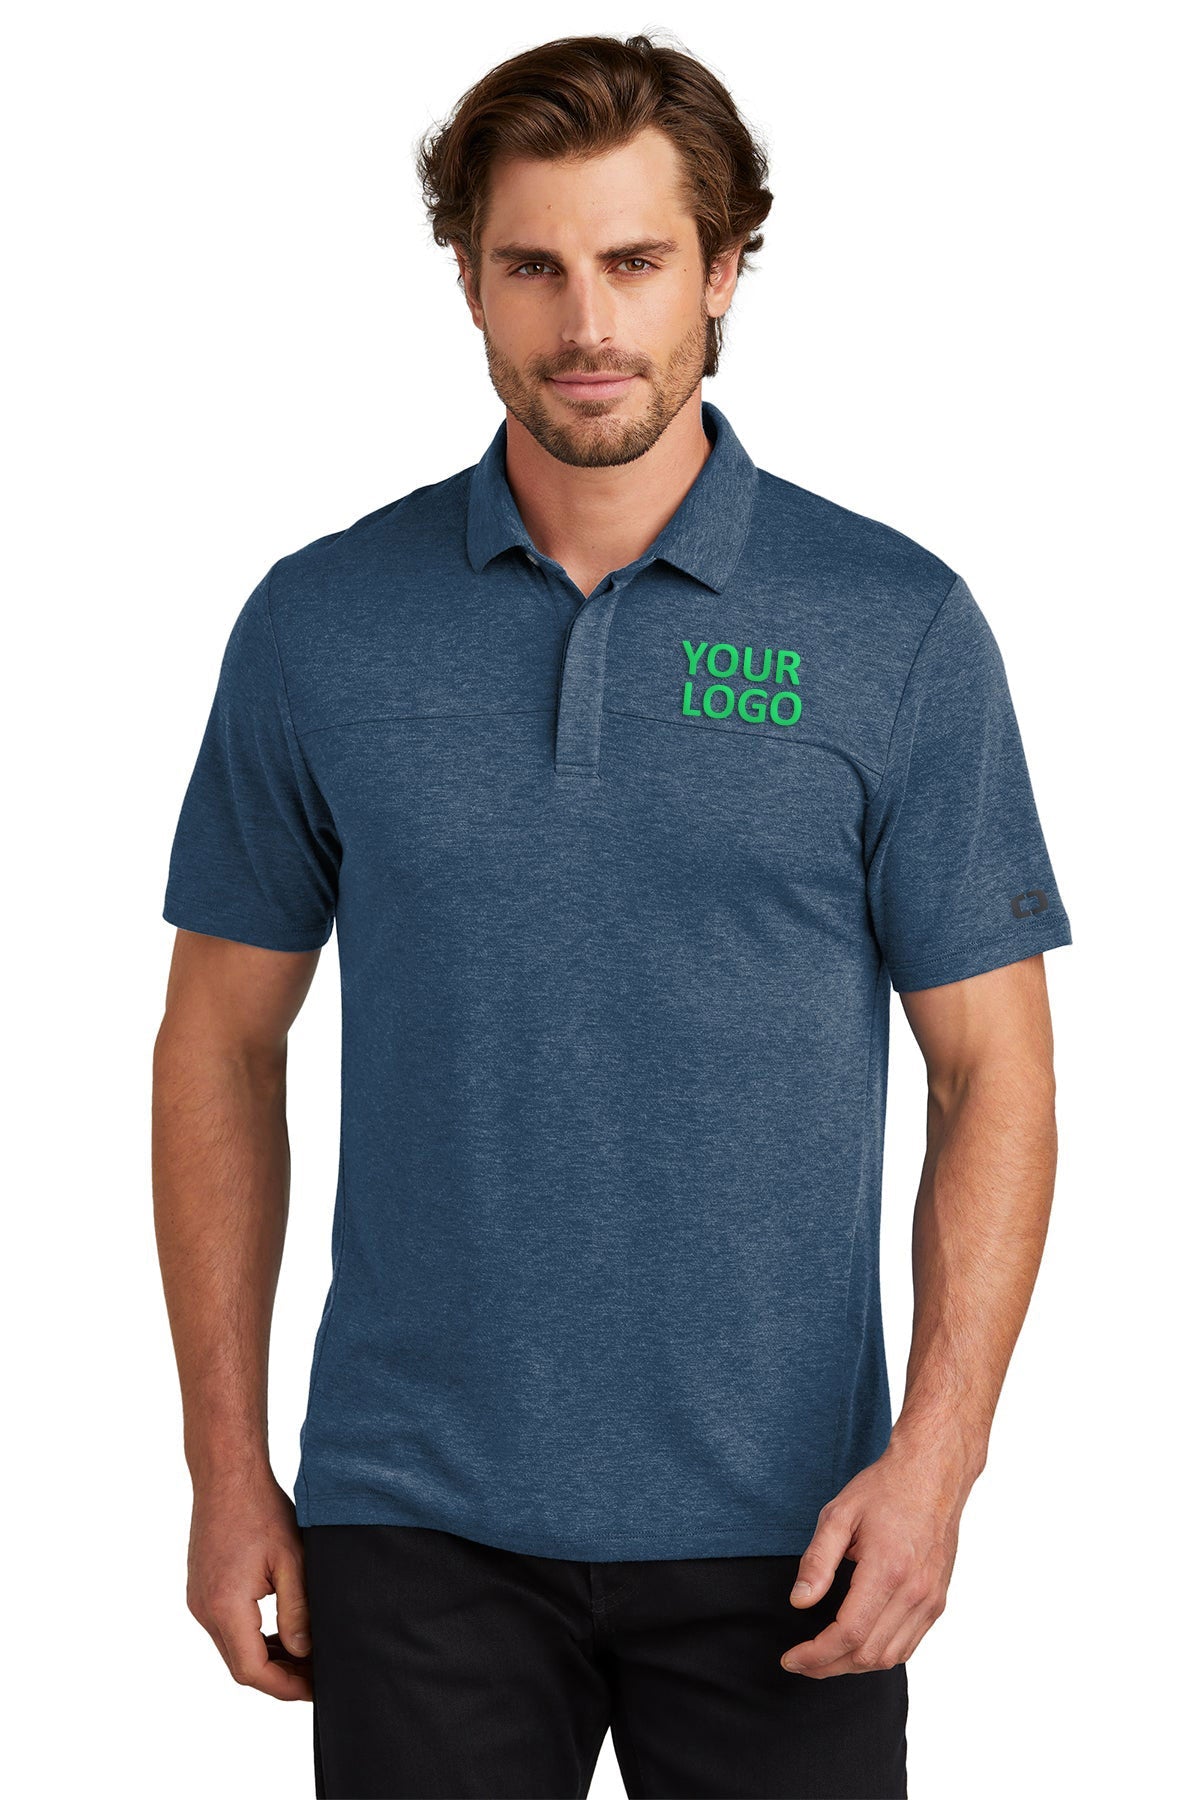 OGIO Spar Blue OG150 custom dri fit polo shirts